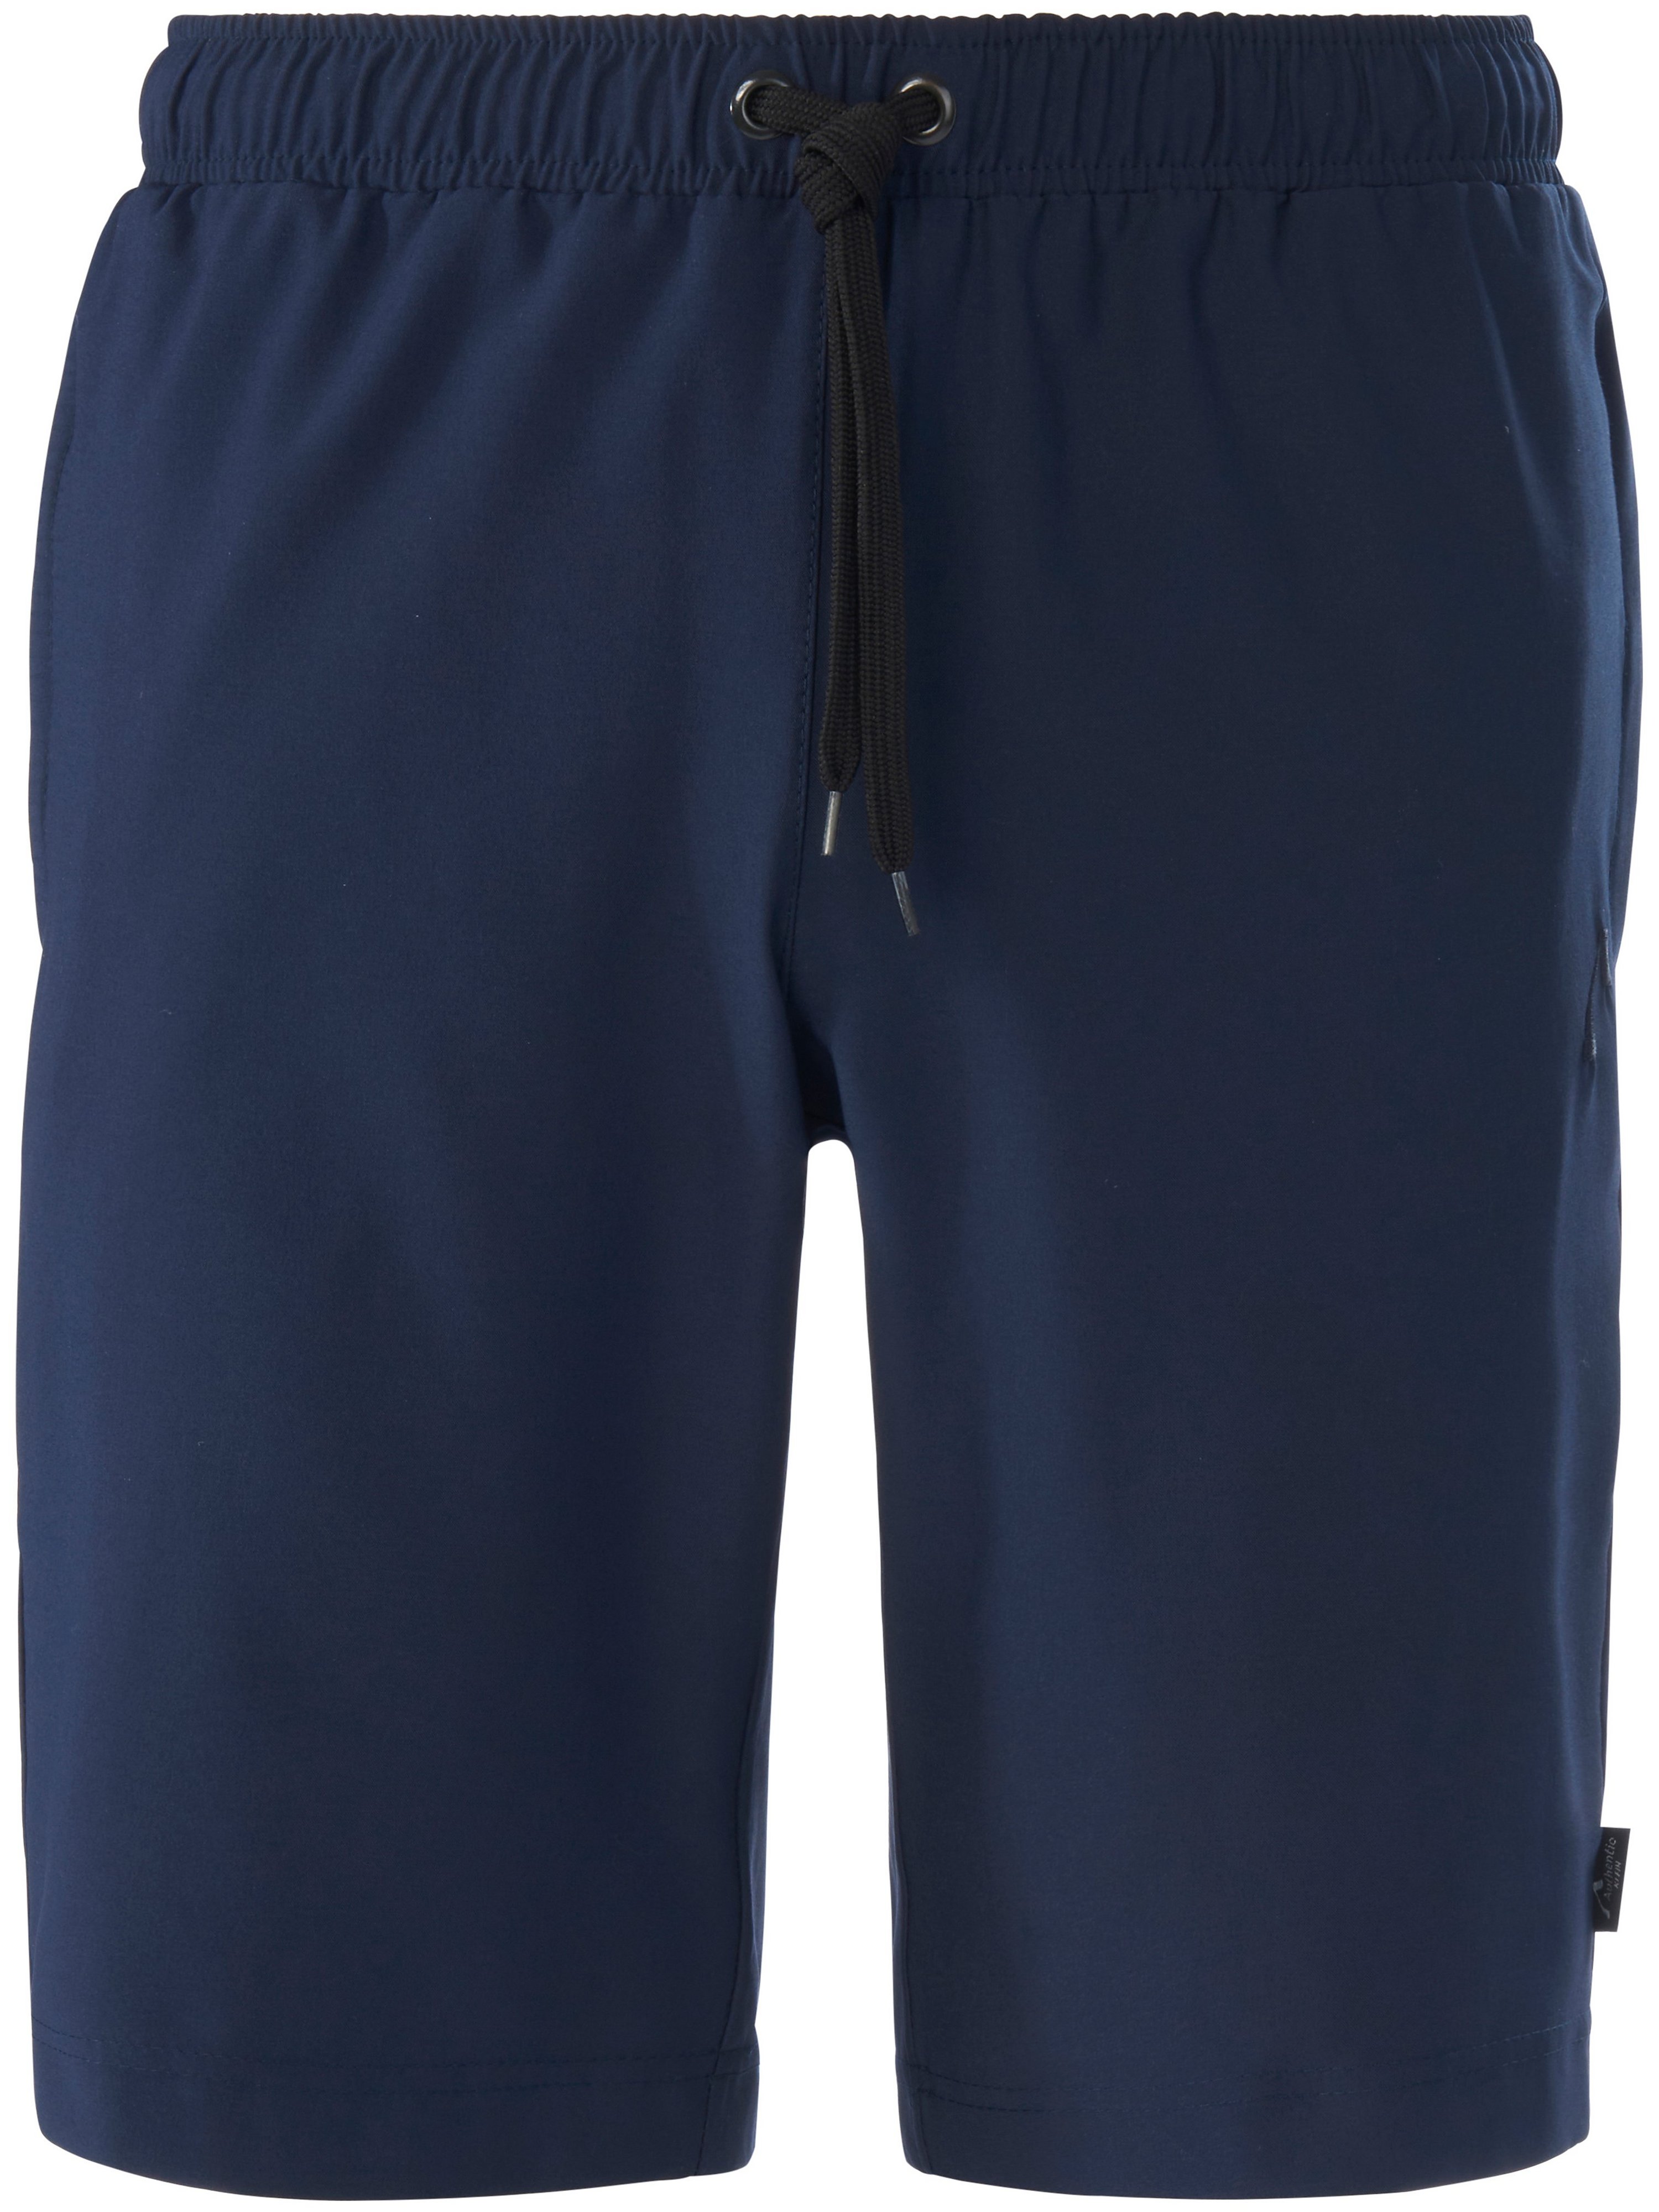 Le short sport avec 2 poches zippées devant  Authentic Klein bleu taille 56